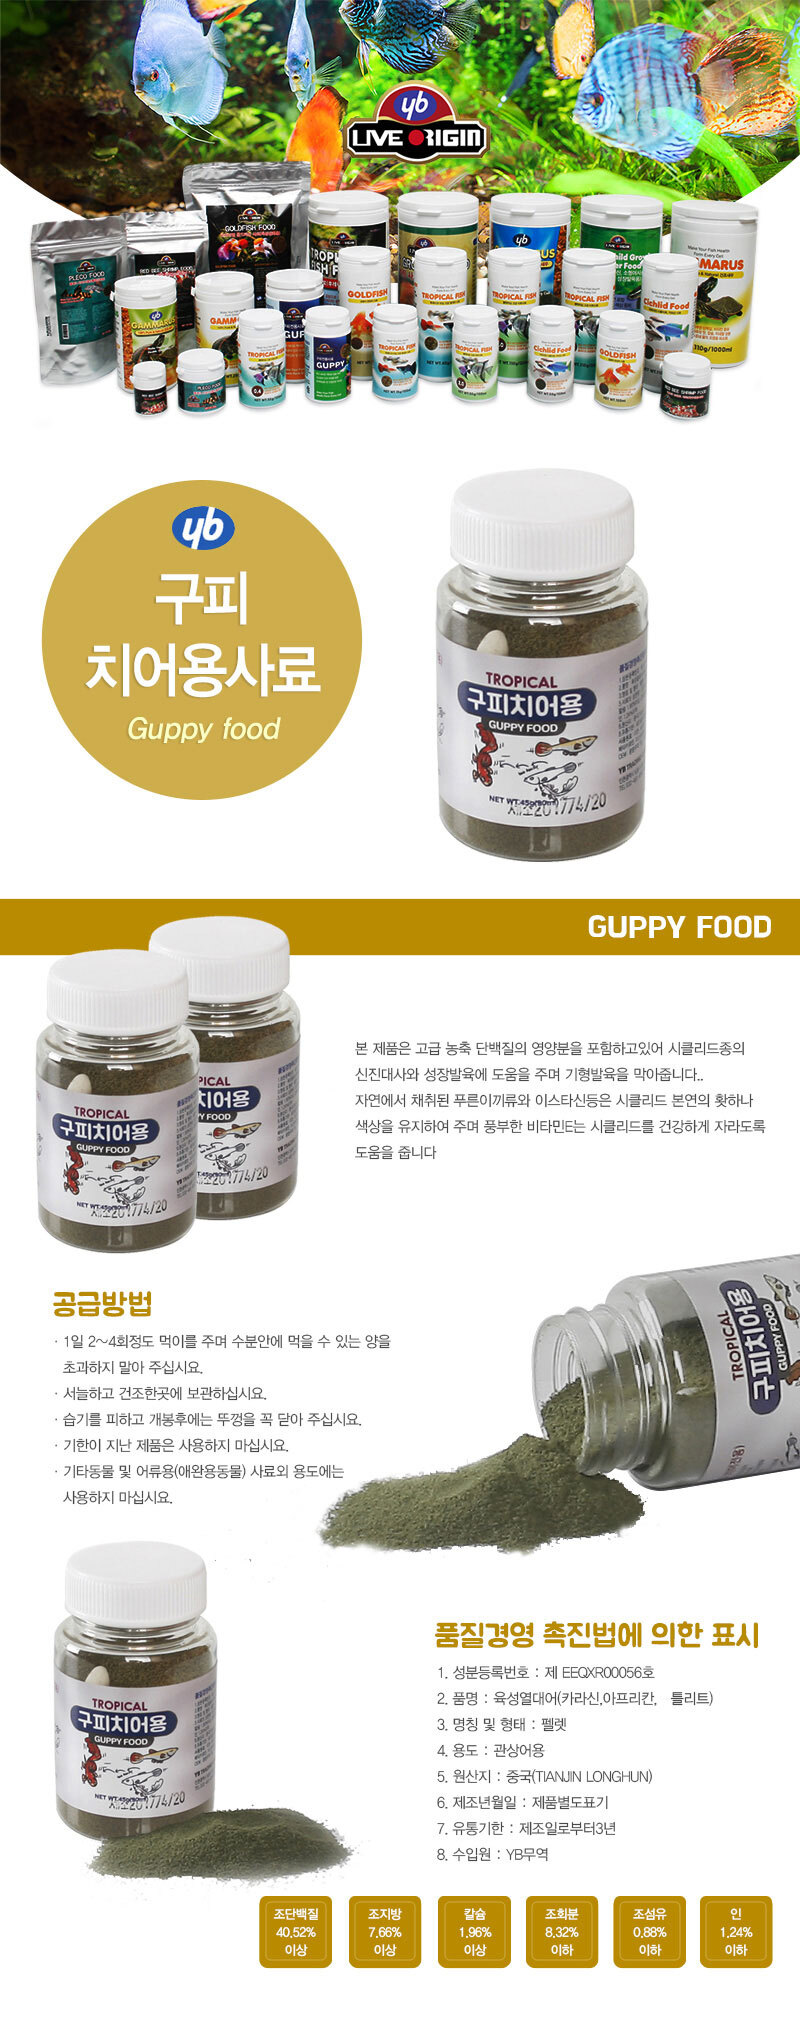 YB_guppy_baby_food_D.jpg